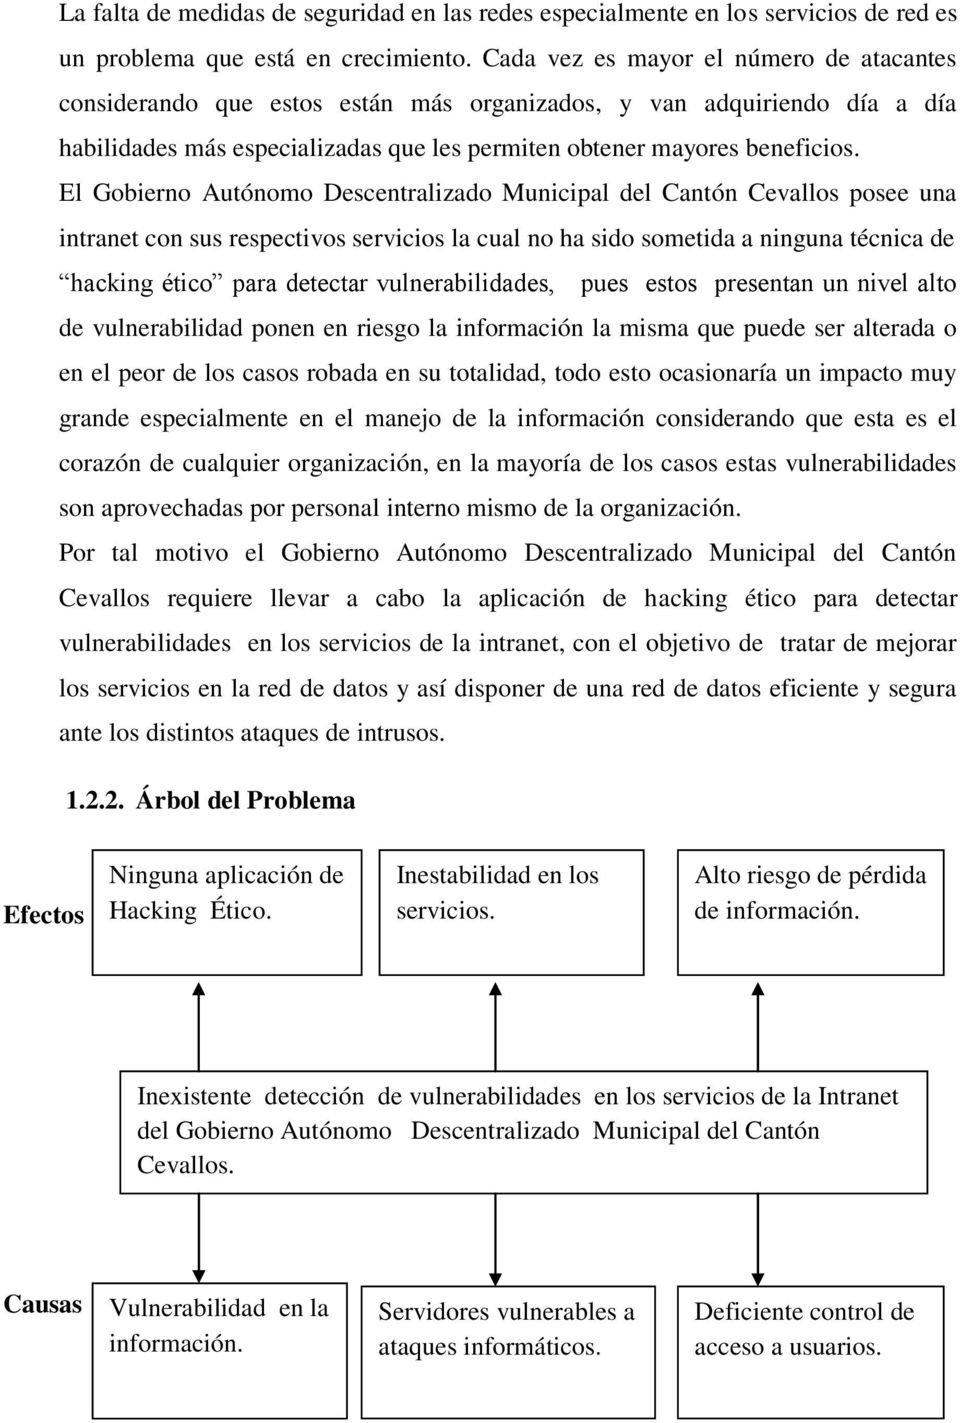 El Gobierno Autónomo Descentralizado Municipal del Cantón Cevallos posee una intranet con sus respectivos servicios la cual no ha sido sometida a ninguna técnica de hacking ético para detectar